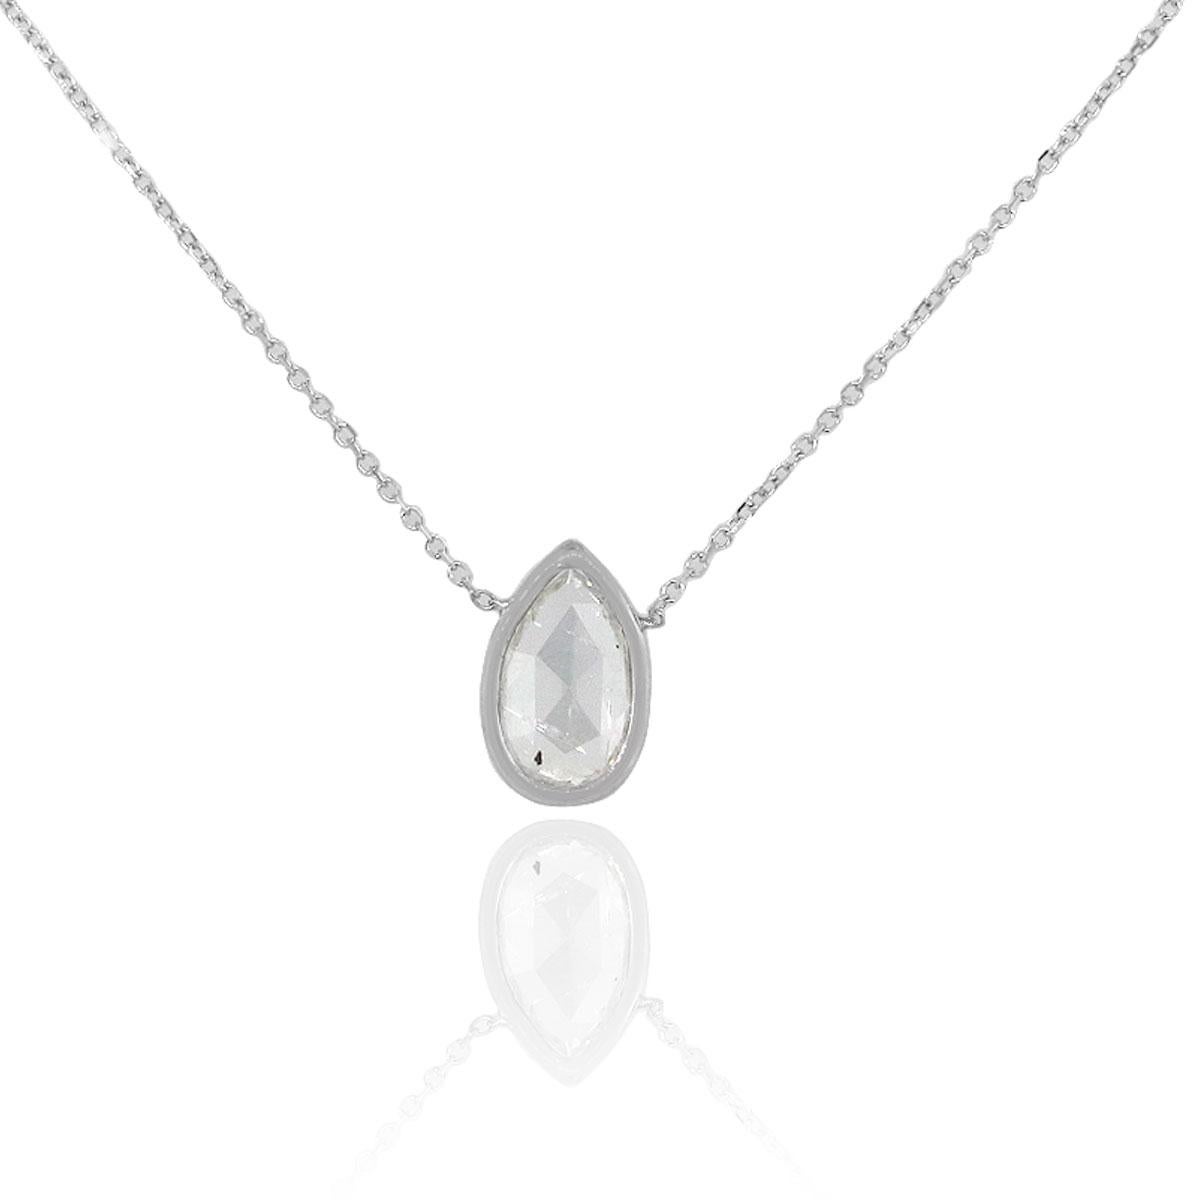 Material: 14k White Gold
Diamond Details: Approx. 1.24ctw Bezel set pear shape diamond.
Measurements: Necklace measures 16